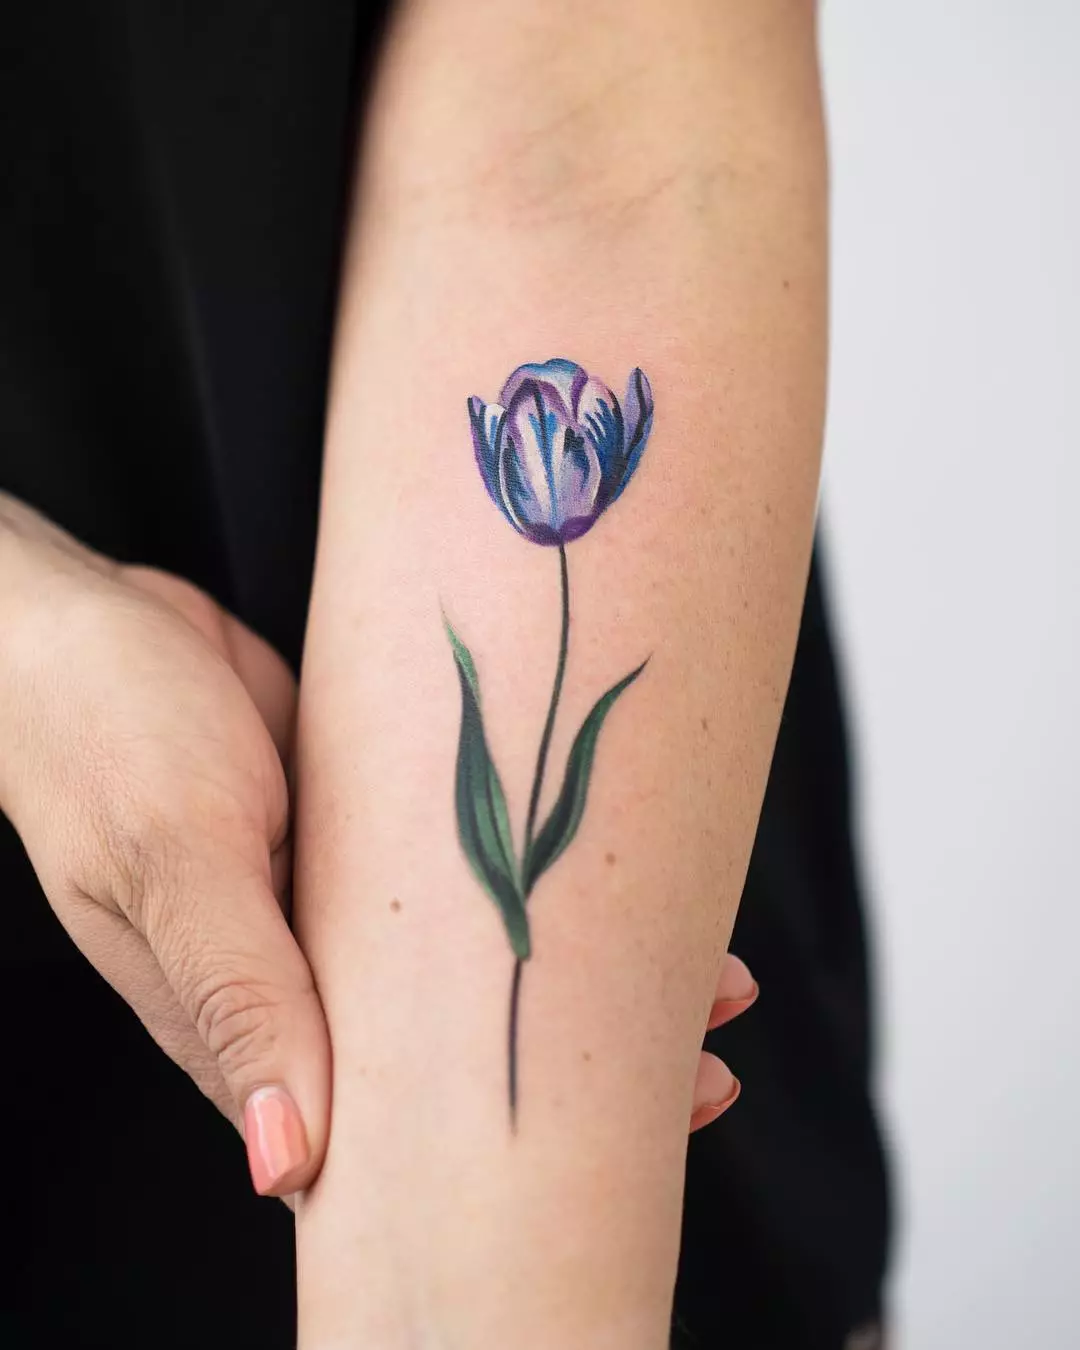 ស្នាមសាក់ជាមួយ tulips: តម្លៃនៃការចាក់សាក់សម្រាប់ក្មេងស្រីនិងសម្រាប់បុរសការបង្ហាញប្រភេទរូបភាព។ ការចាក់សាក់នៅលើដៃនៅលើកដៃនិងនៅតំបន់ផ្សេងទៀត tulip ខ្មៅនិងជម្រើសផ្សេងទៀត 14192_8